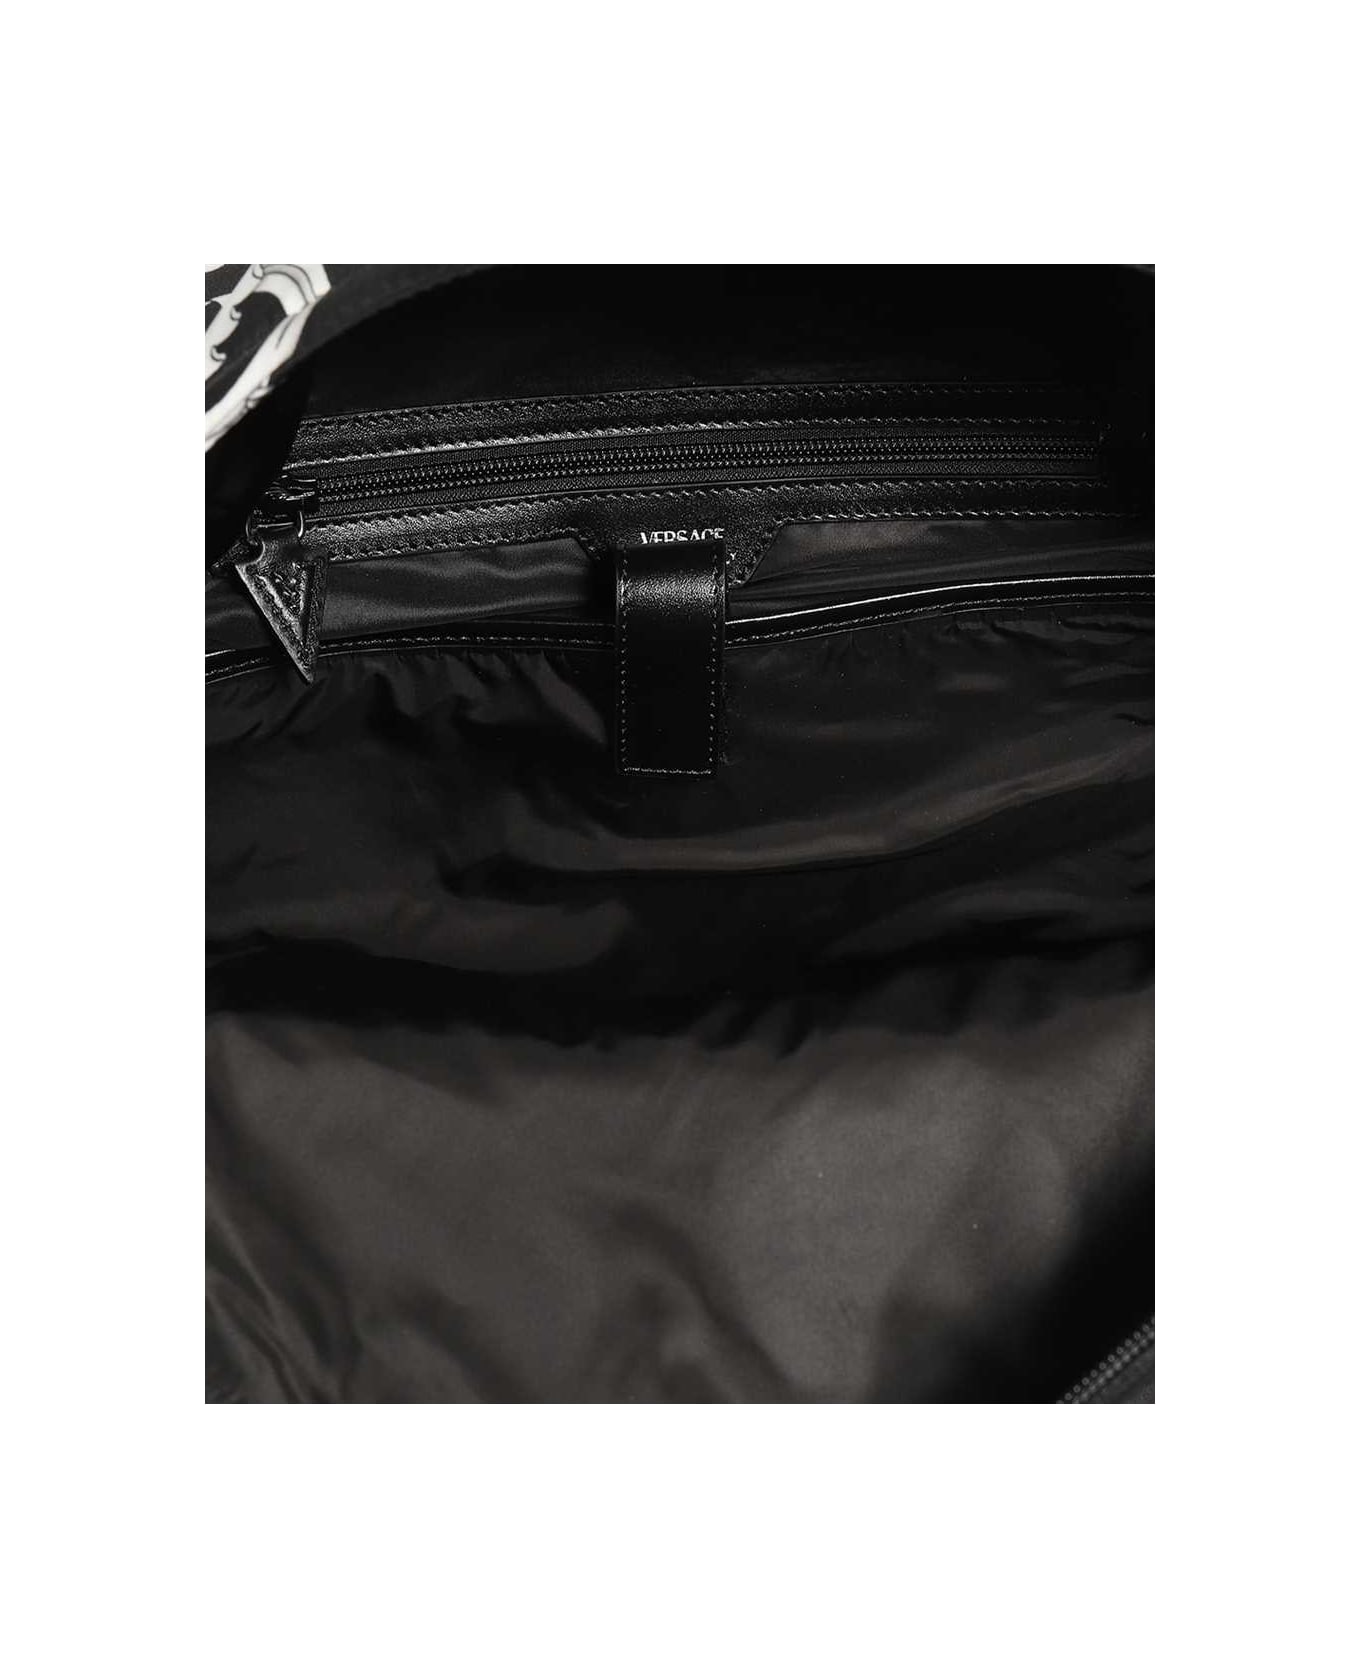 Versace Printed Backpack - black